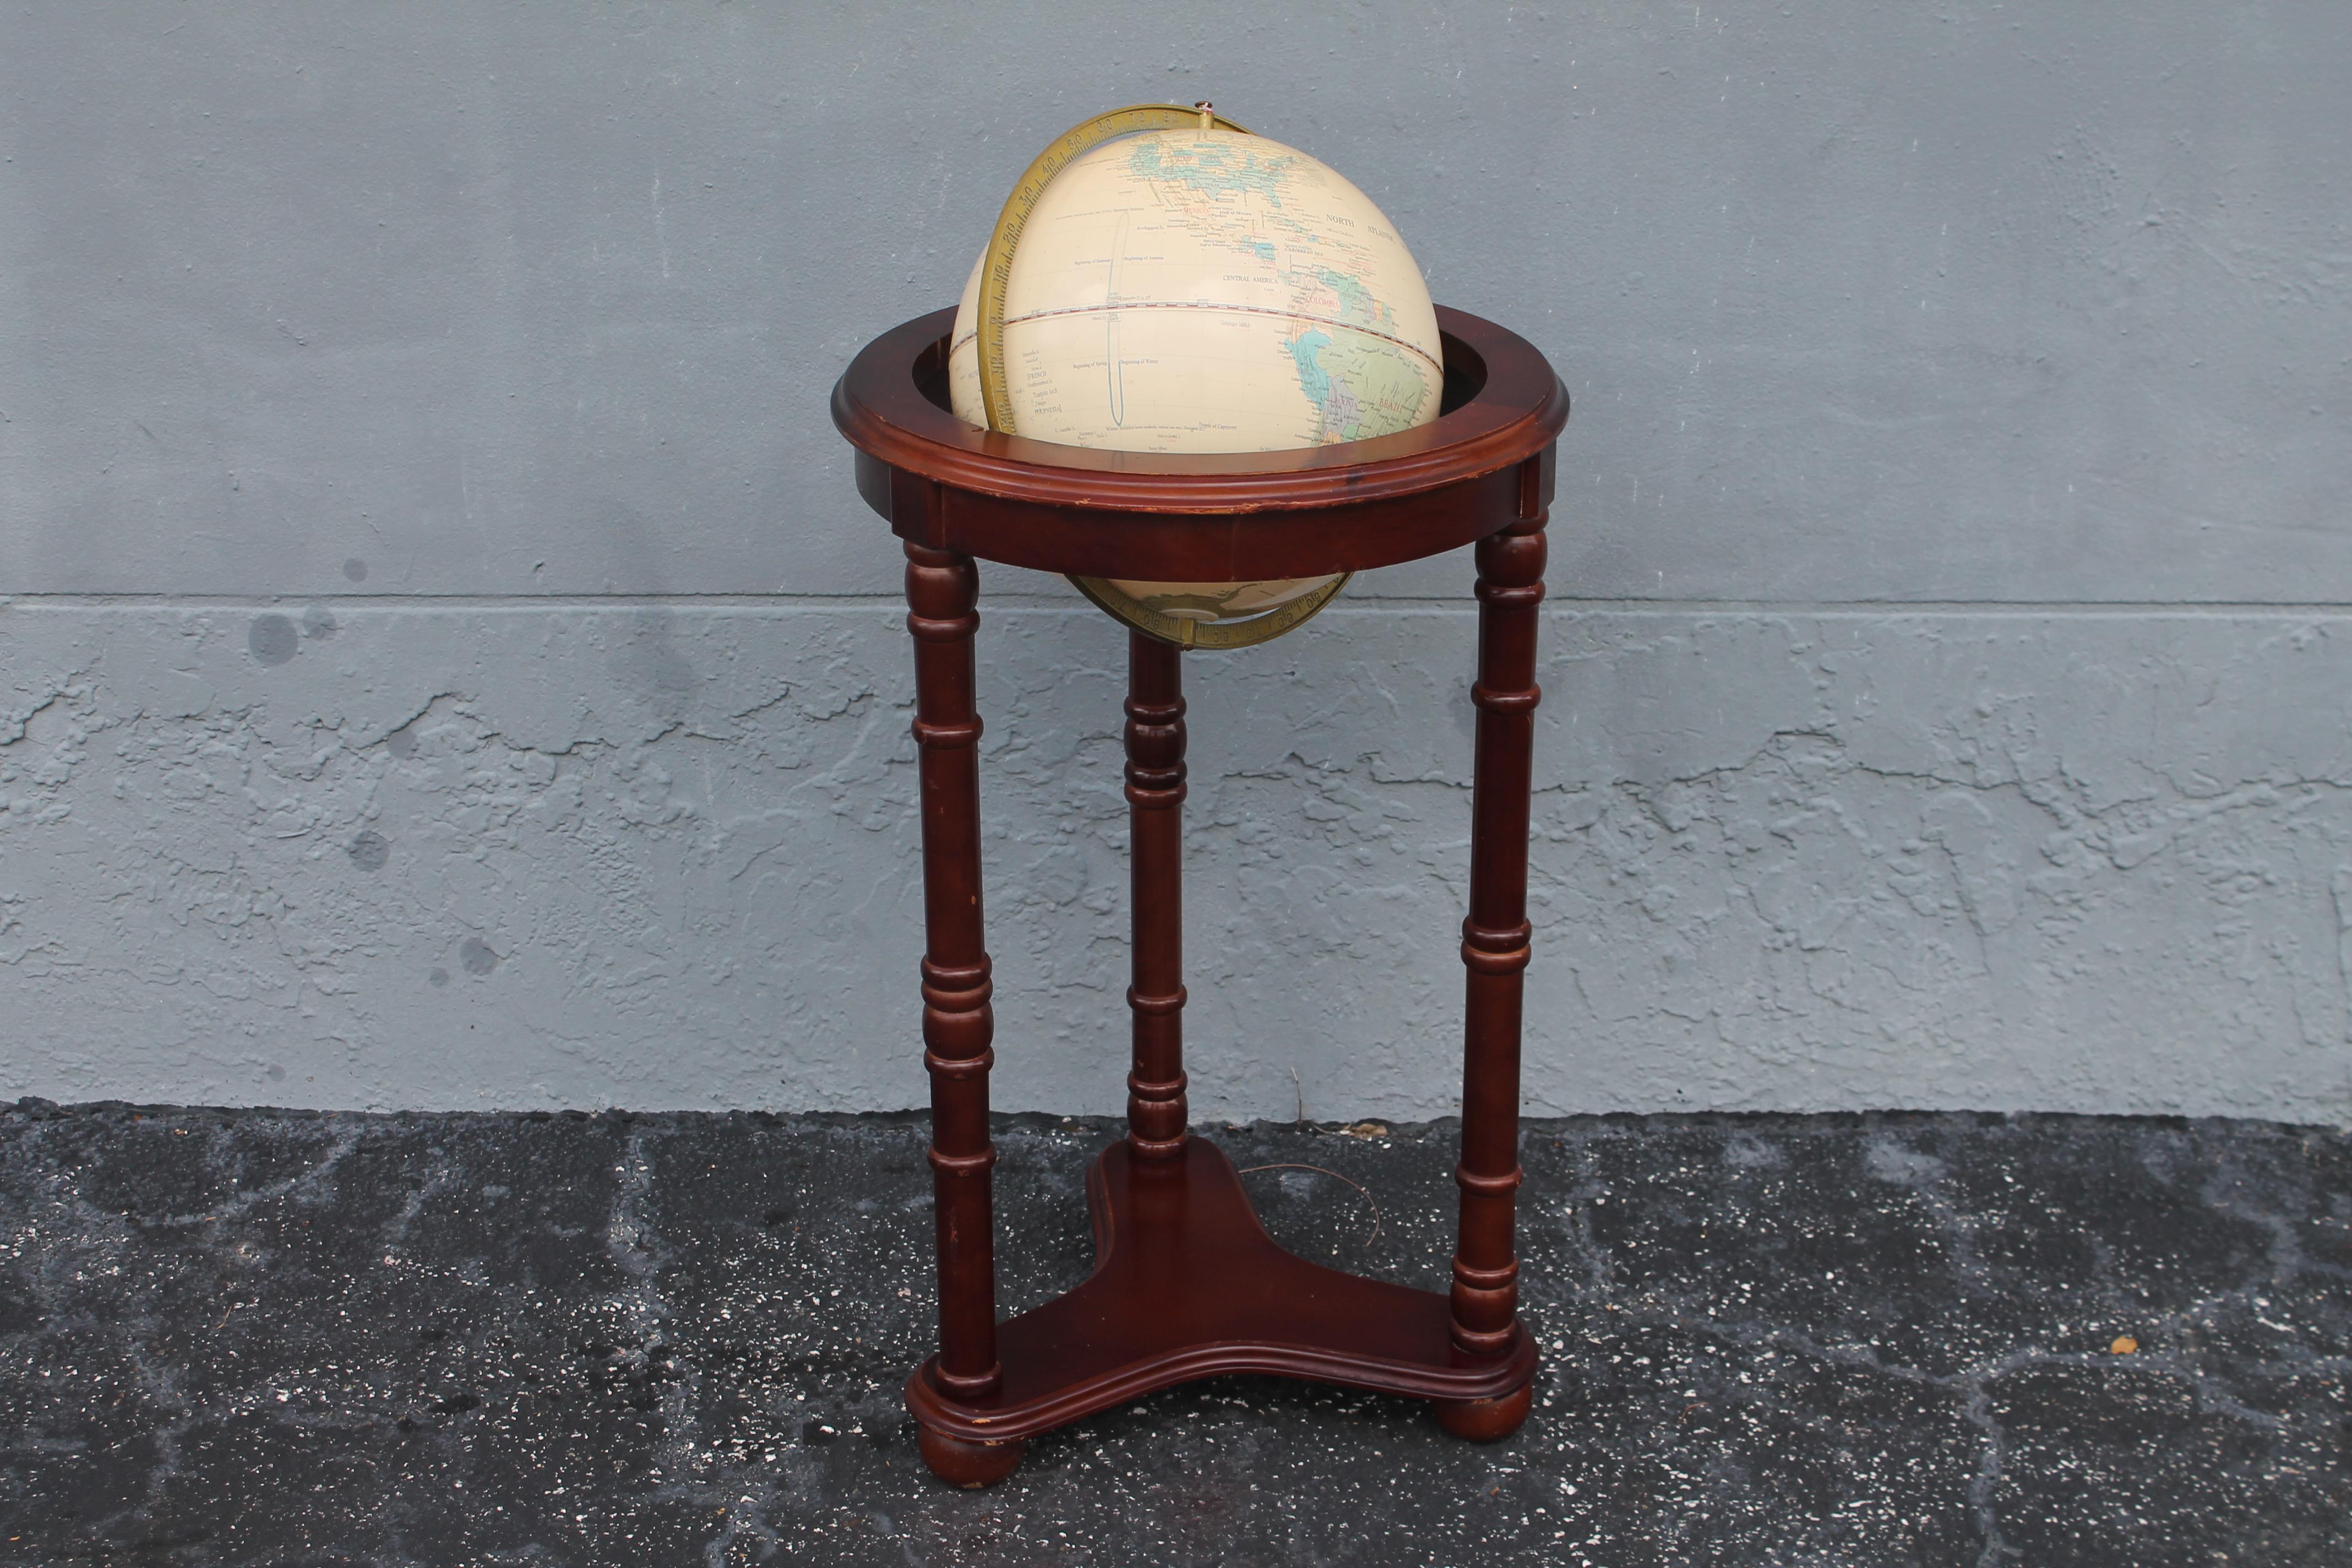 Globe terrestre sur piédestal, art déco français, vers 1920. D'une forme rare, ce globe se dresse magnifiquement sur son socle d'origine.